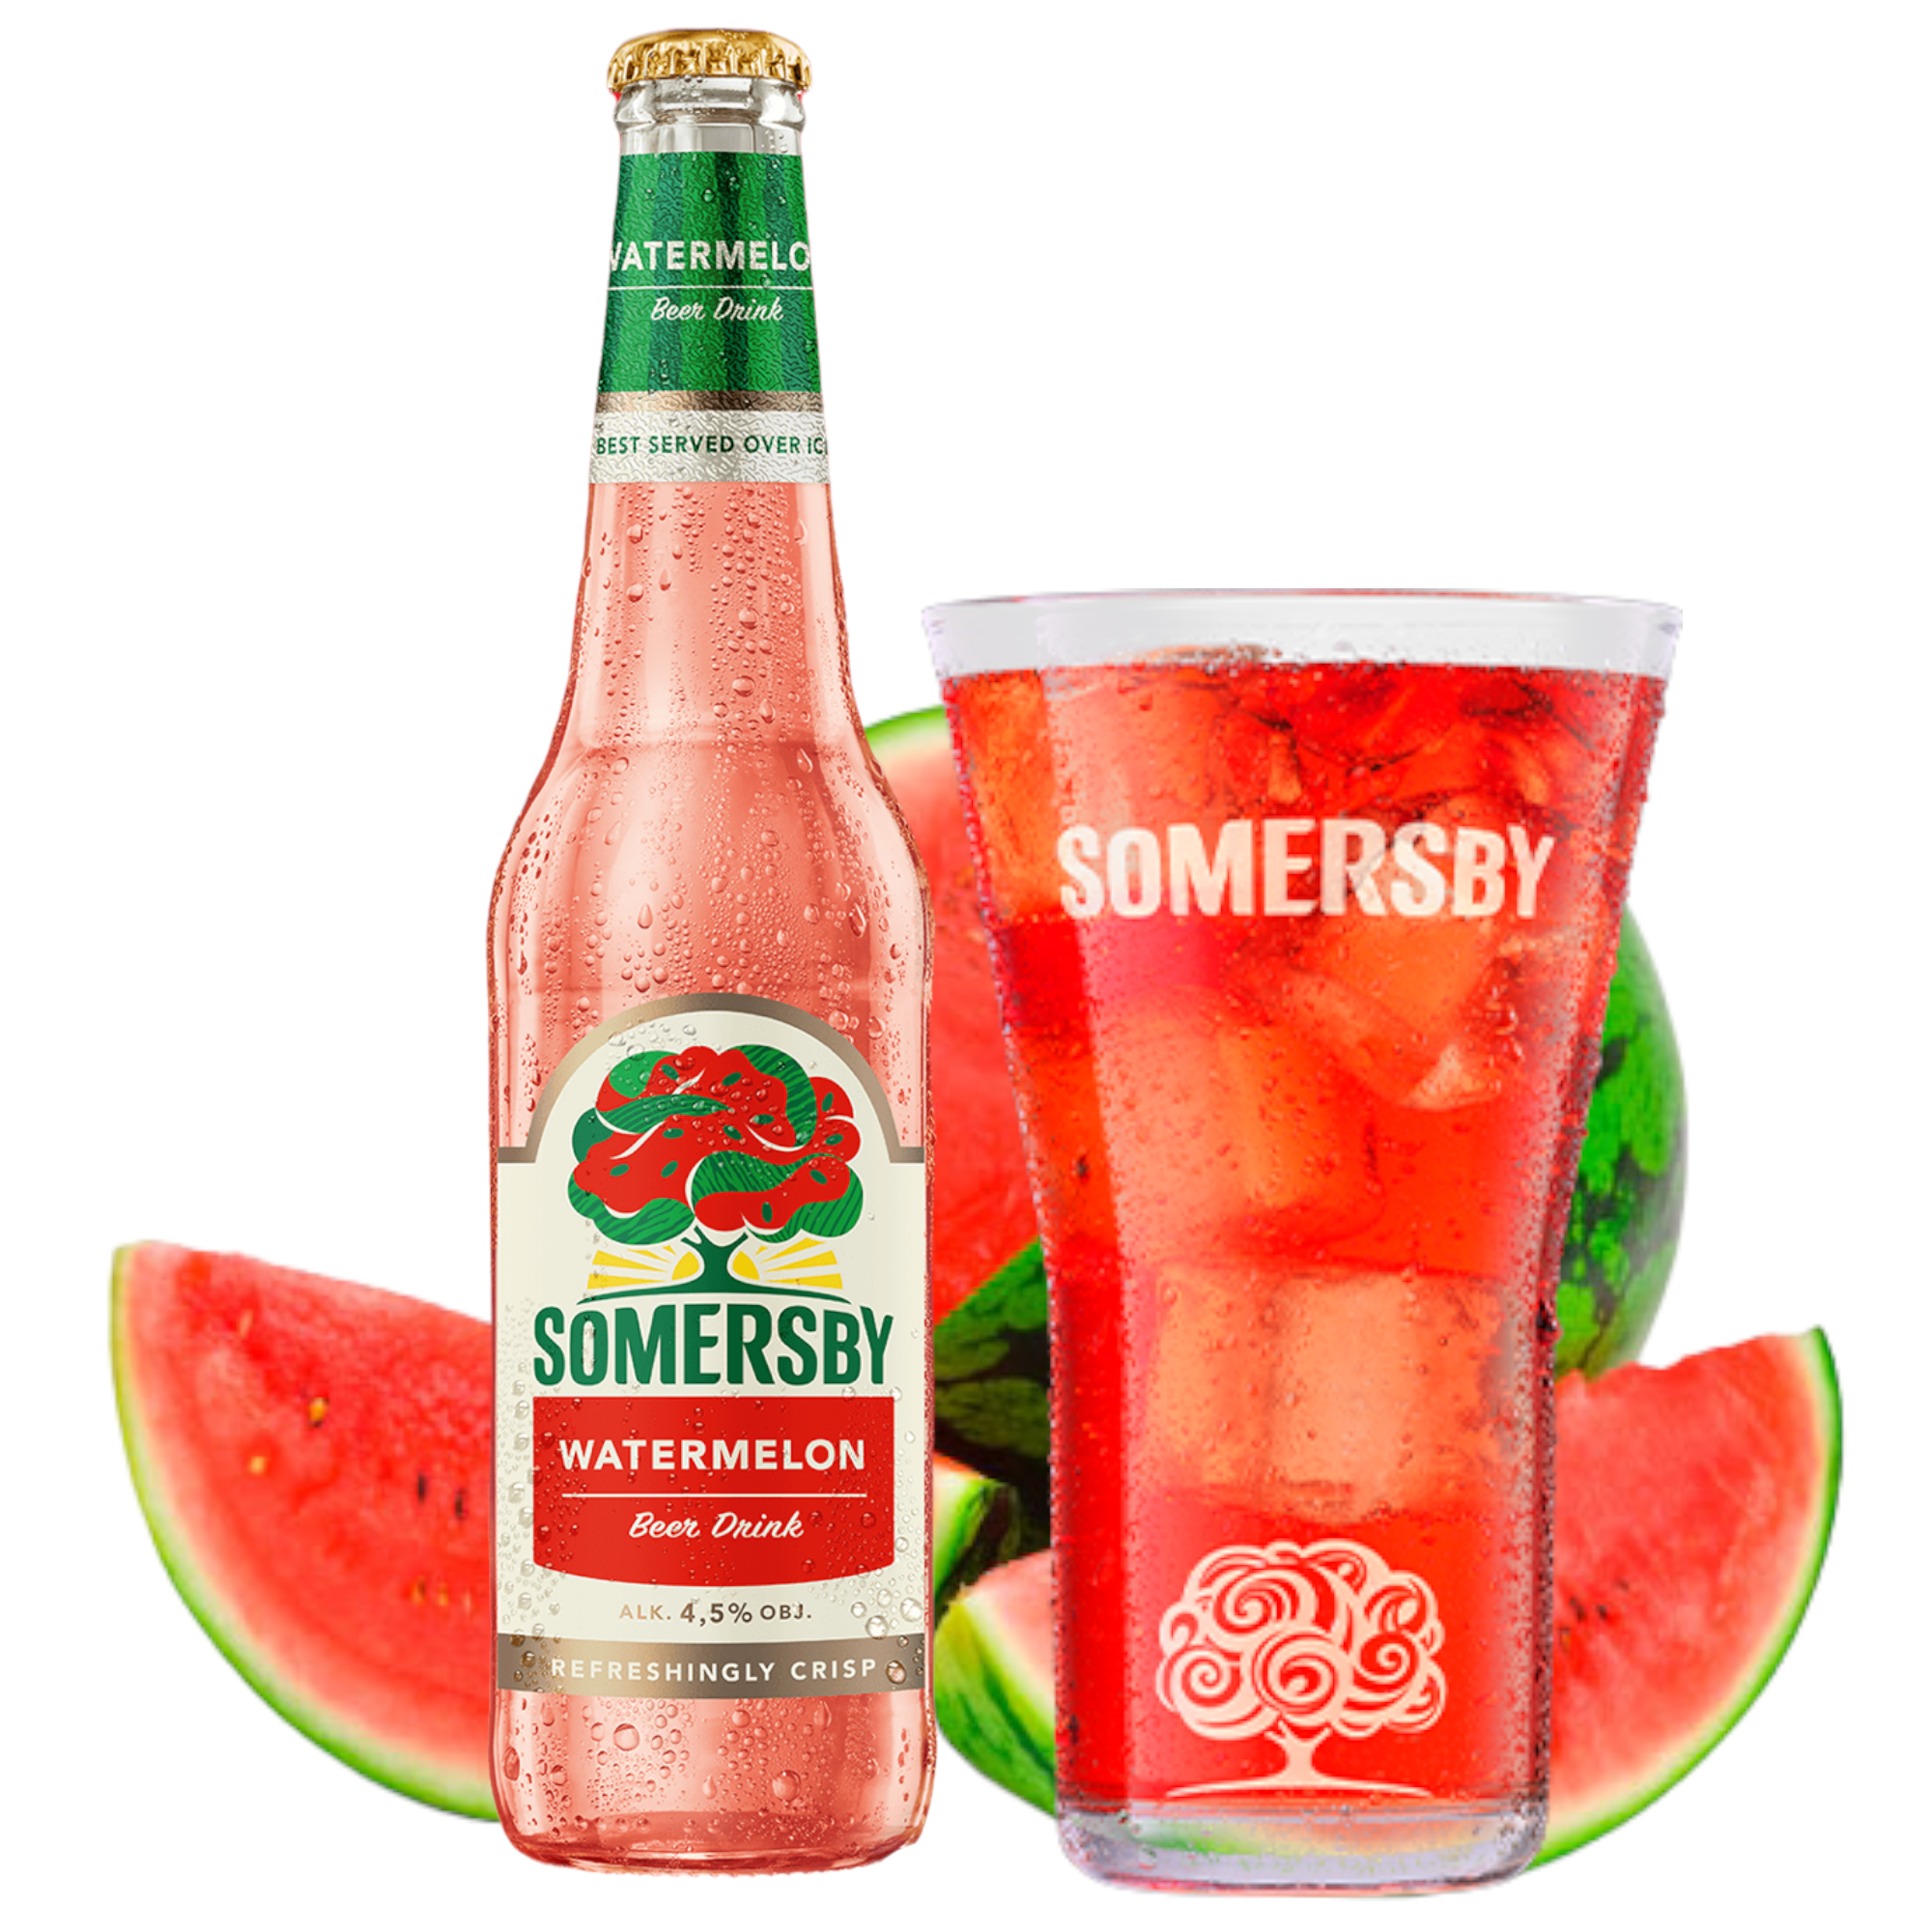 Somersby Watermelon- Wssermelone mit 4,5% Vol.